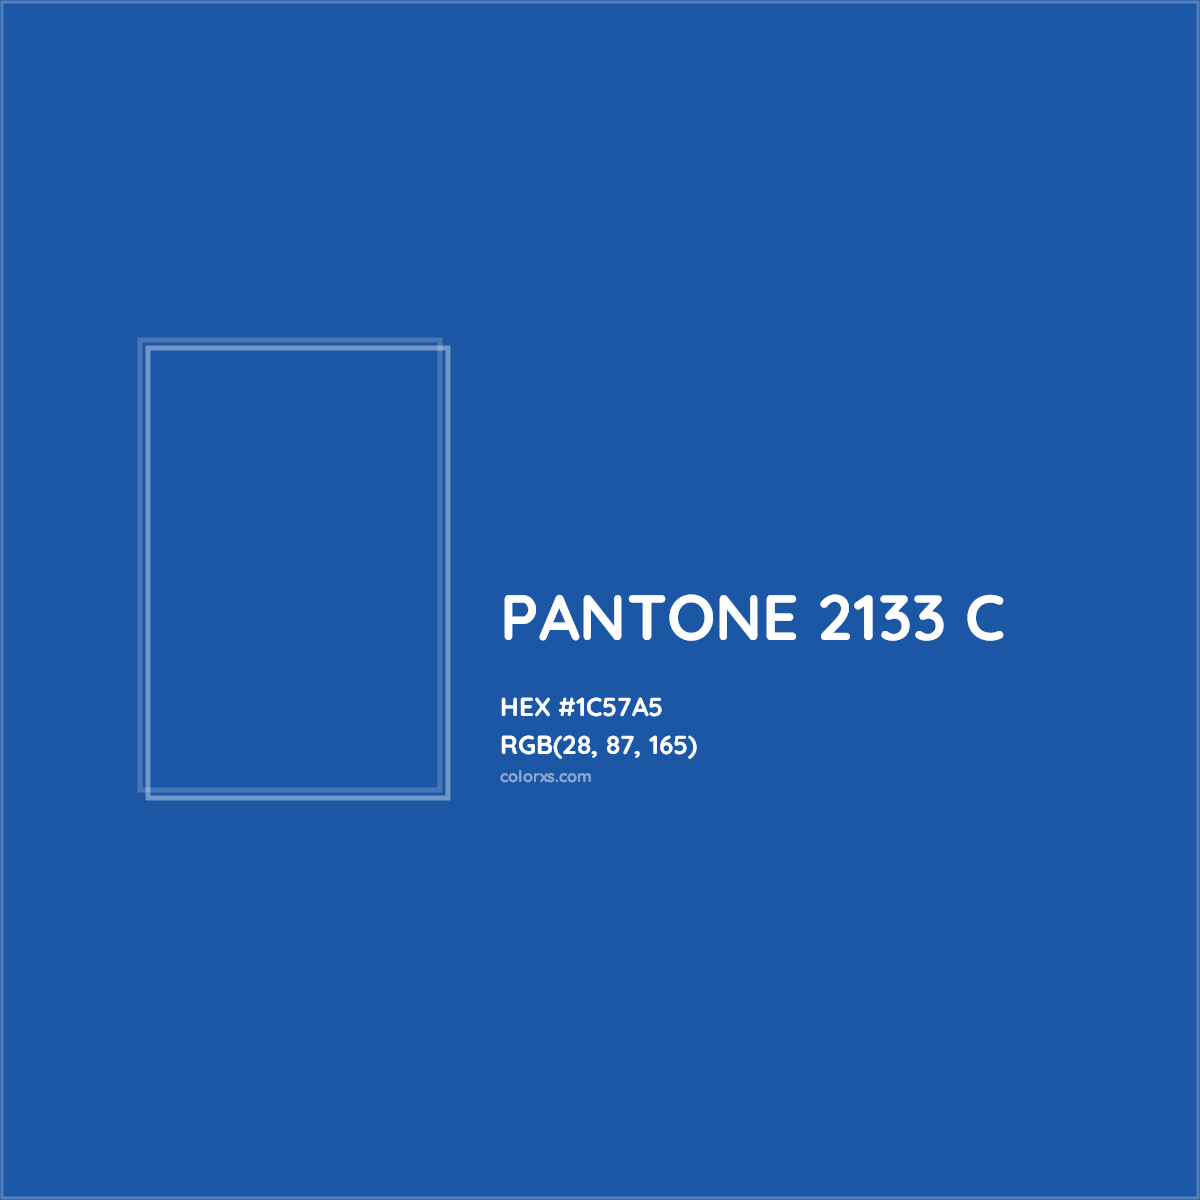 HEX #1C57A5 PANTONE 2133 C CMS Pantone PMS - Color Code